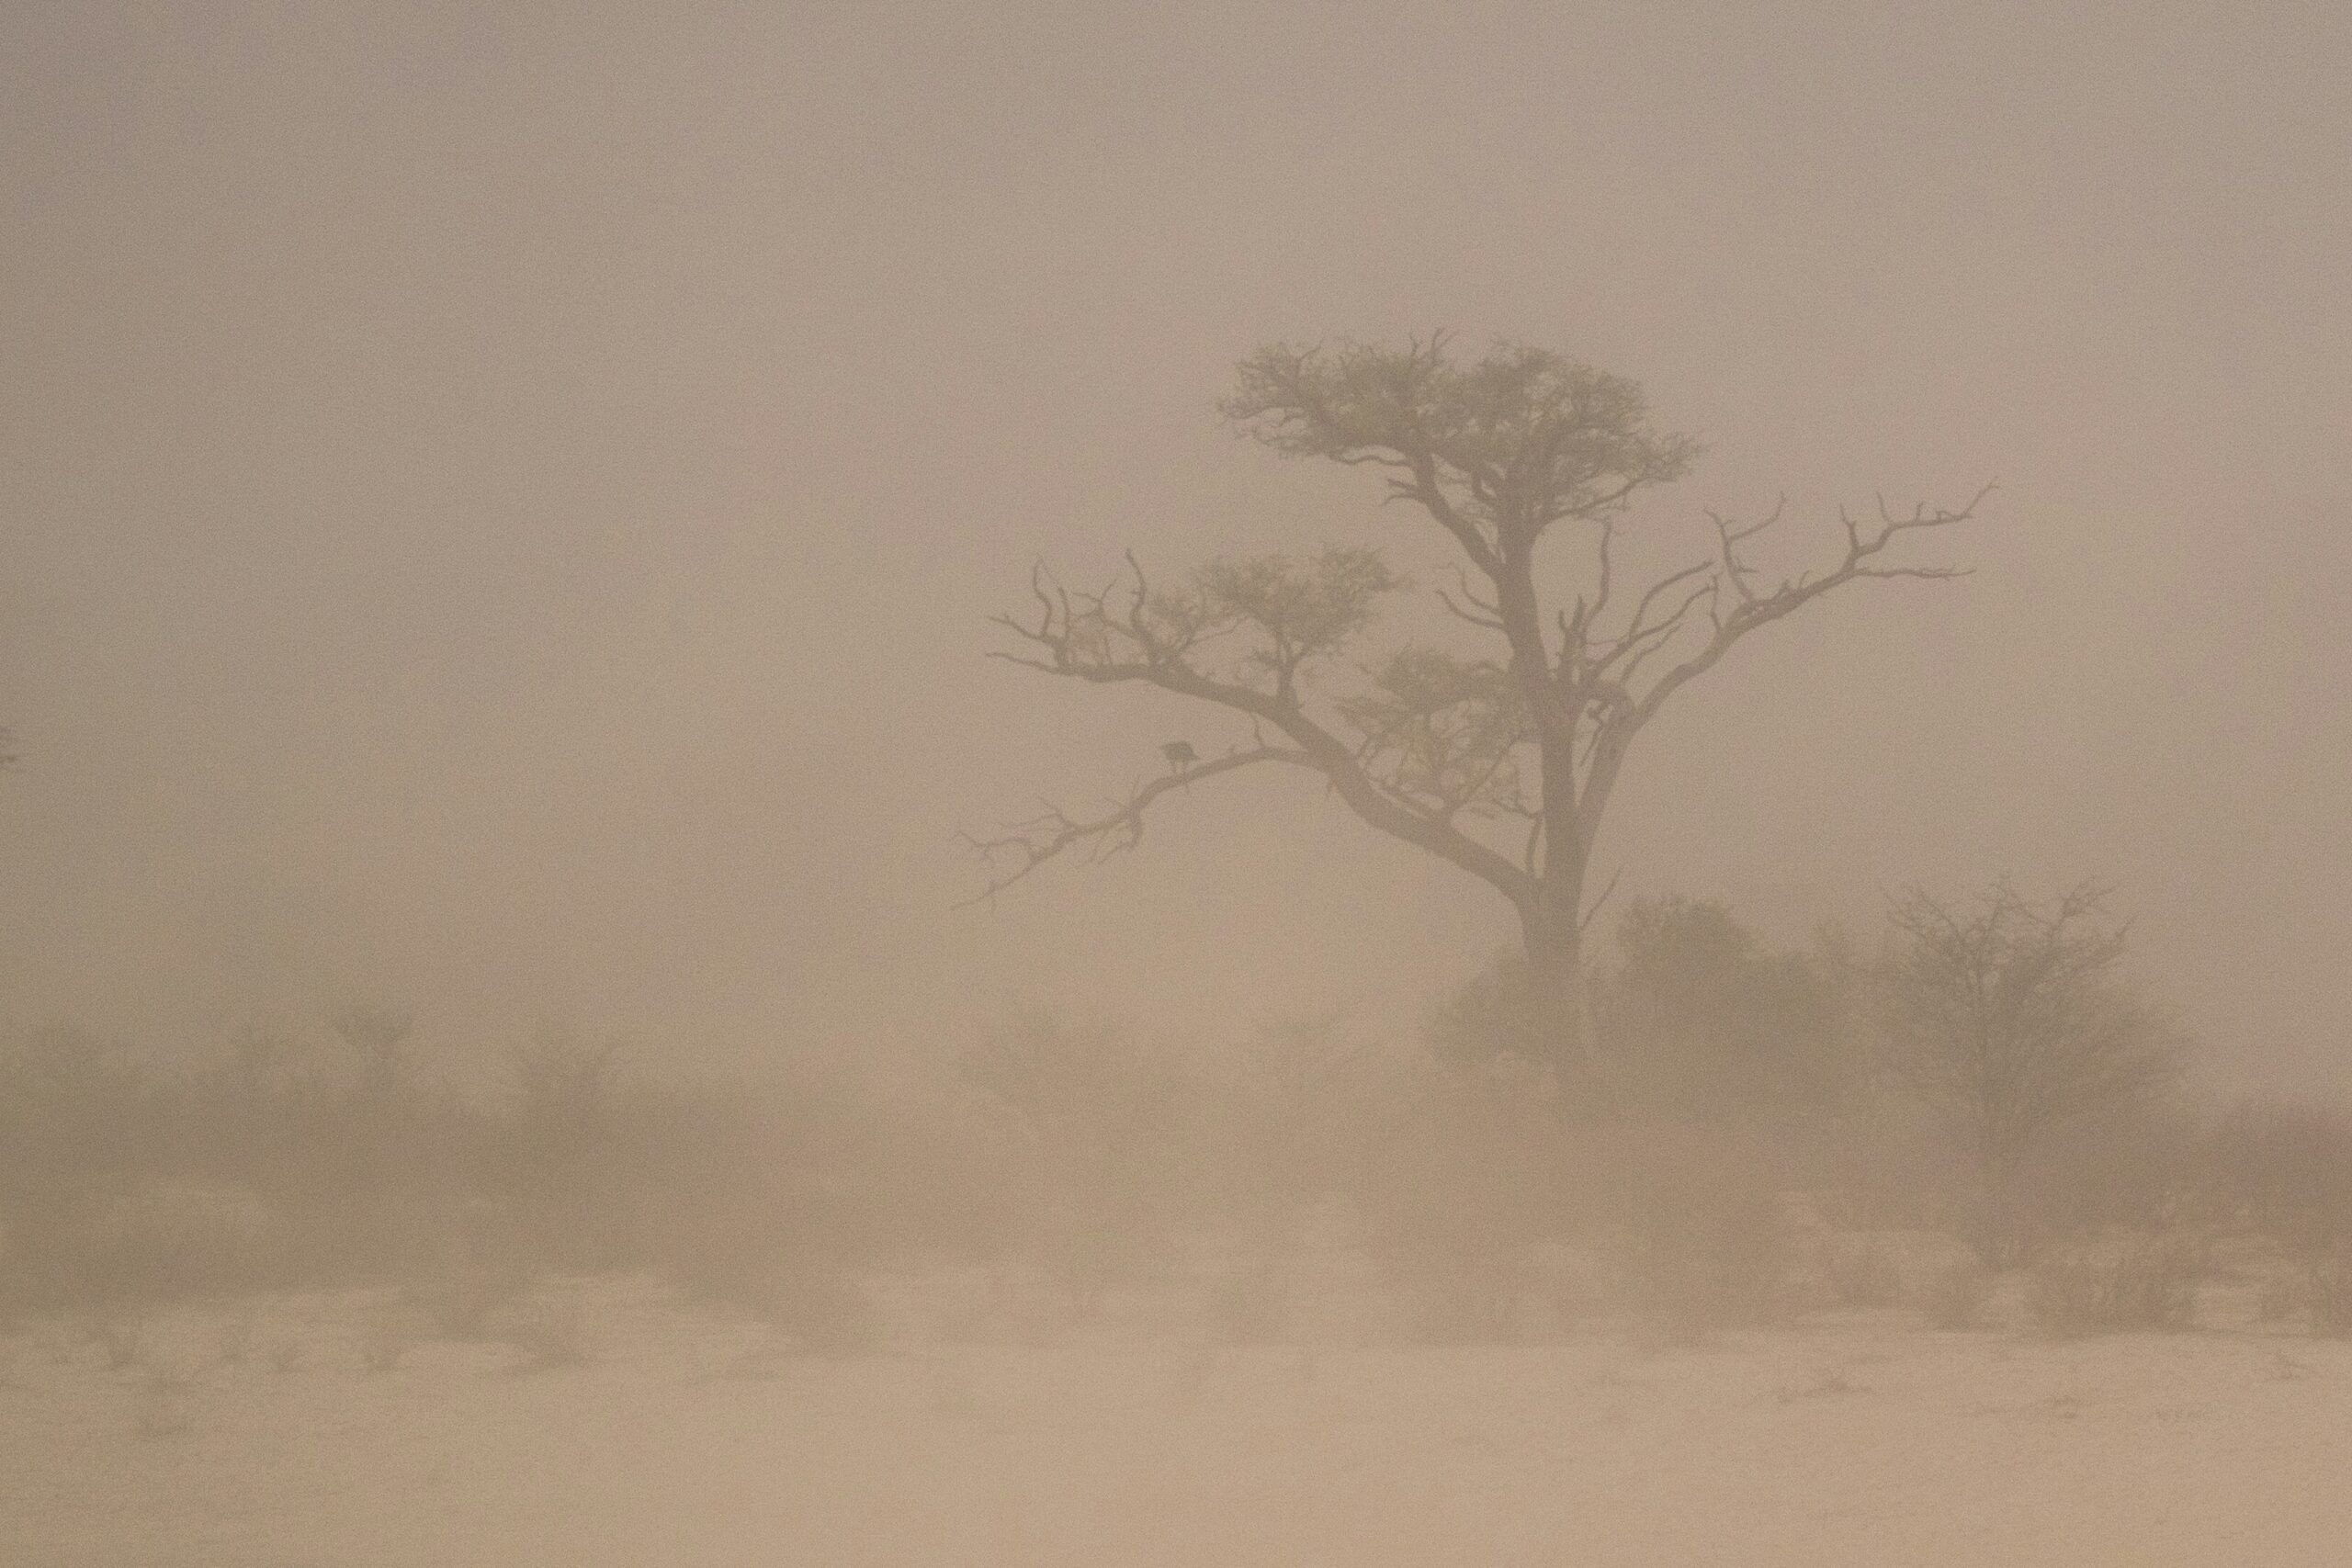 A dust storm on a plain in the Kalahari.